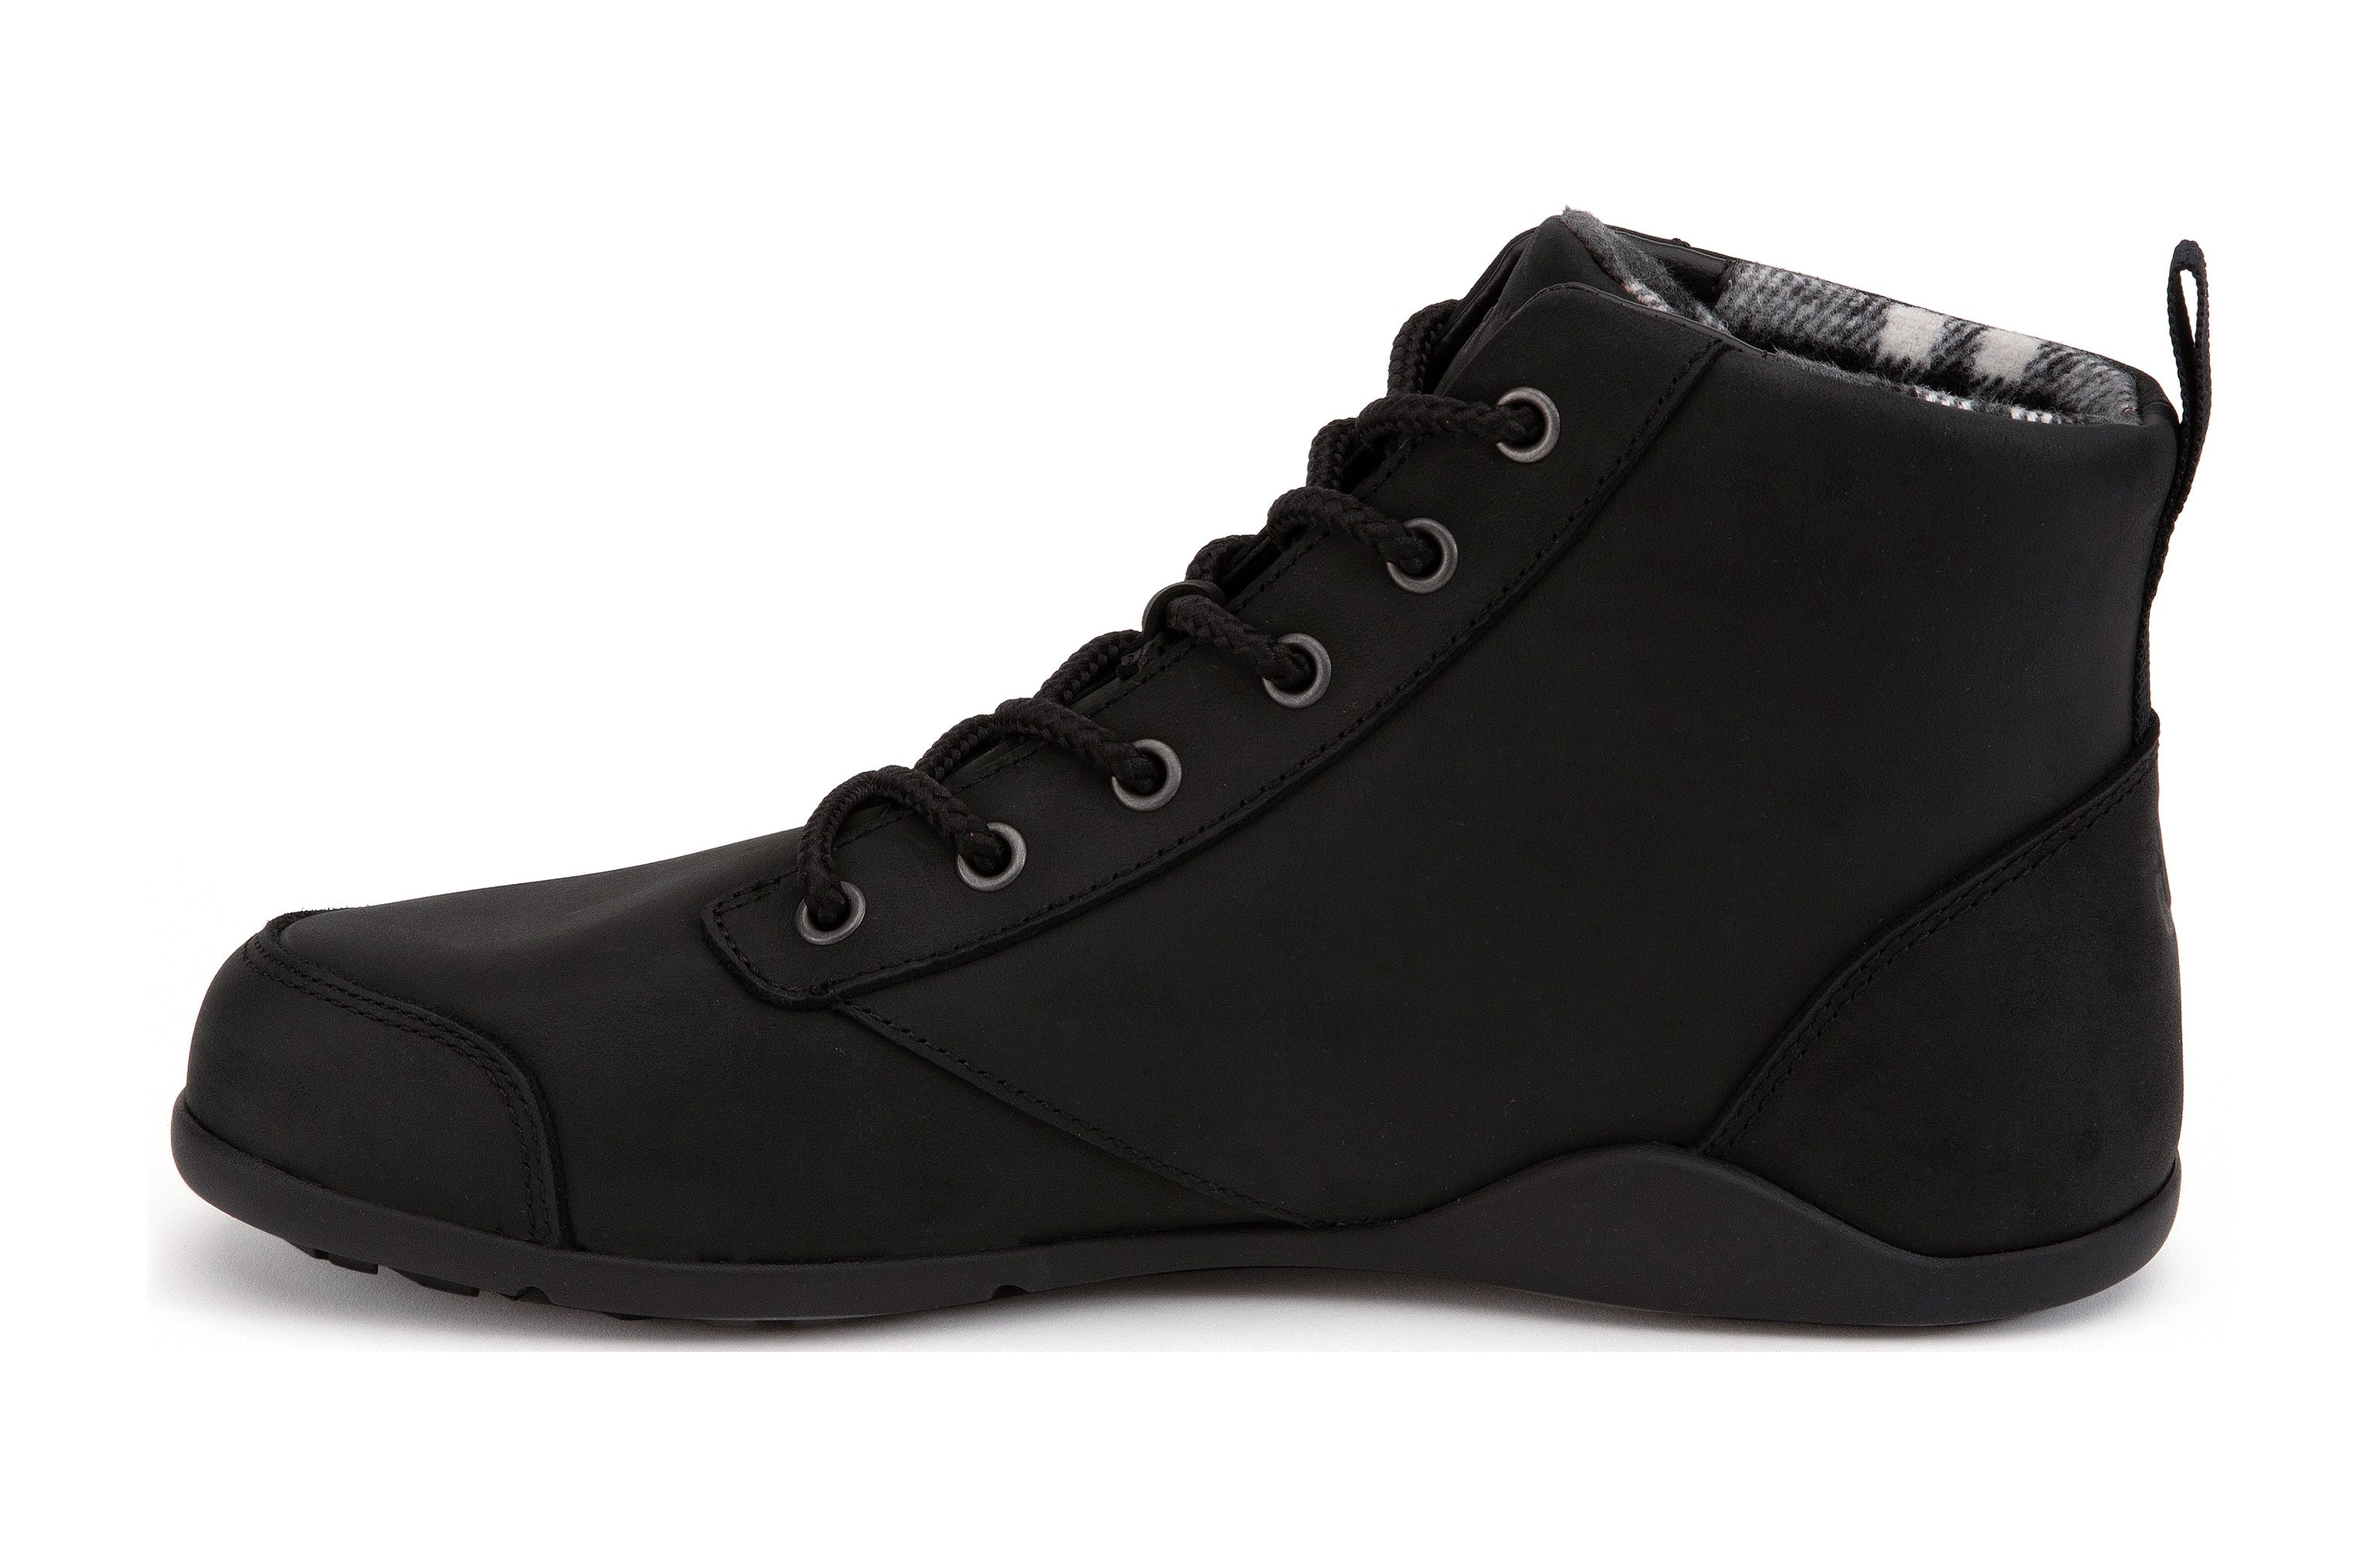 Xero Shoes Denver Leather barfods vinterstøvler til mænd i farven black, inderside